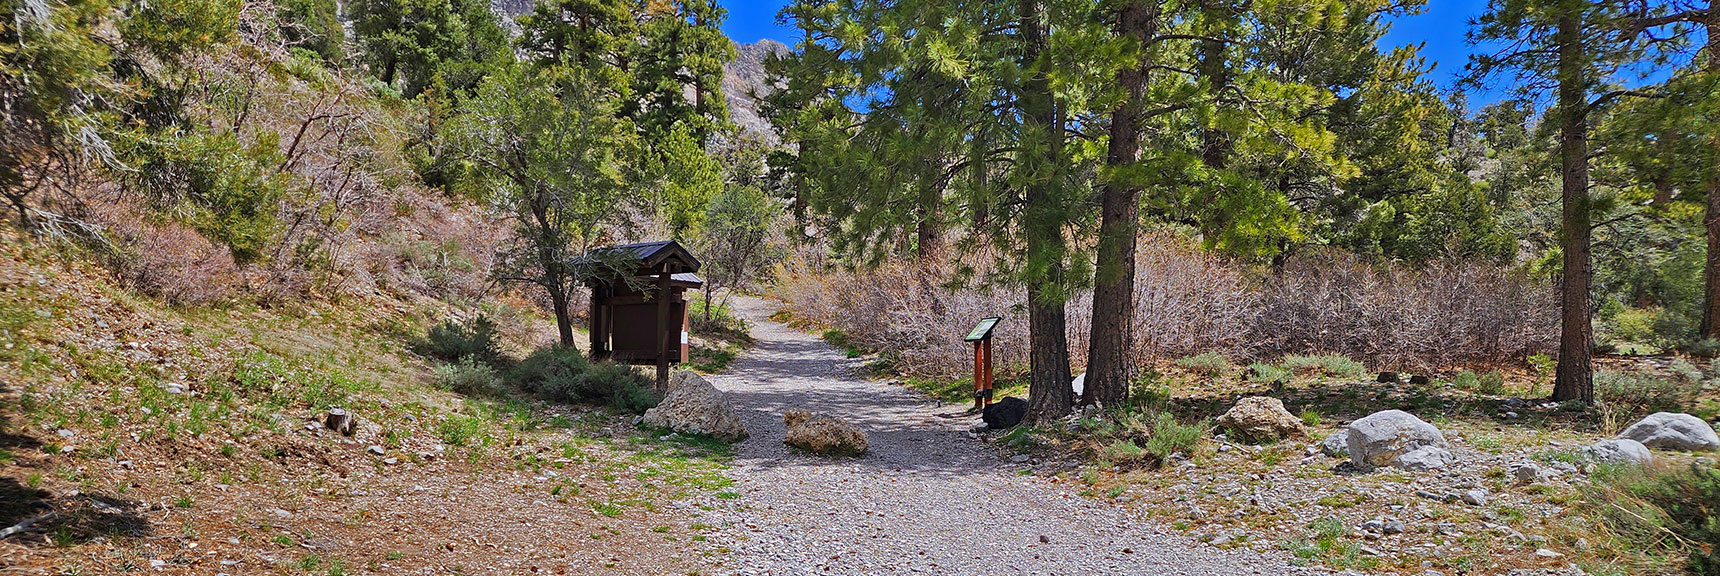 Fletcher Canyon Trailhead | Fletcher Canyon Trail | Mt Charleston Wilderness | Spring Mountains, Nevada